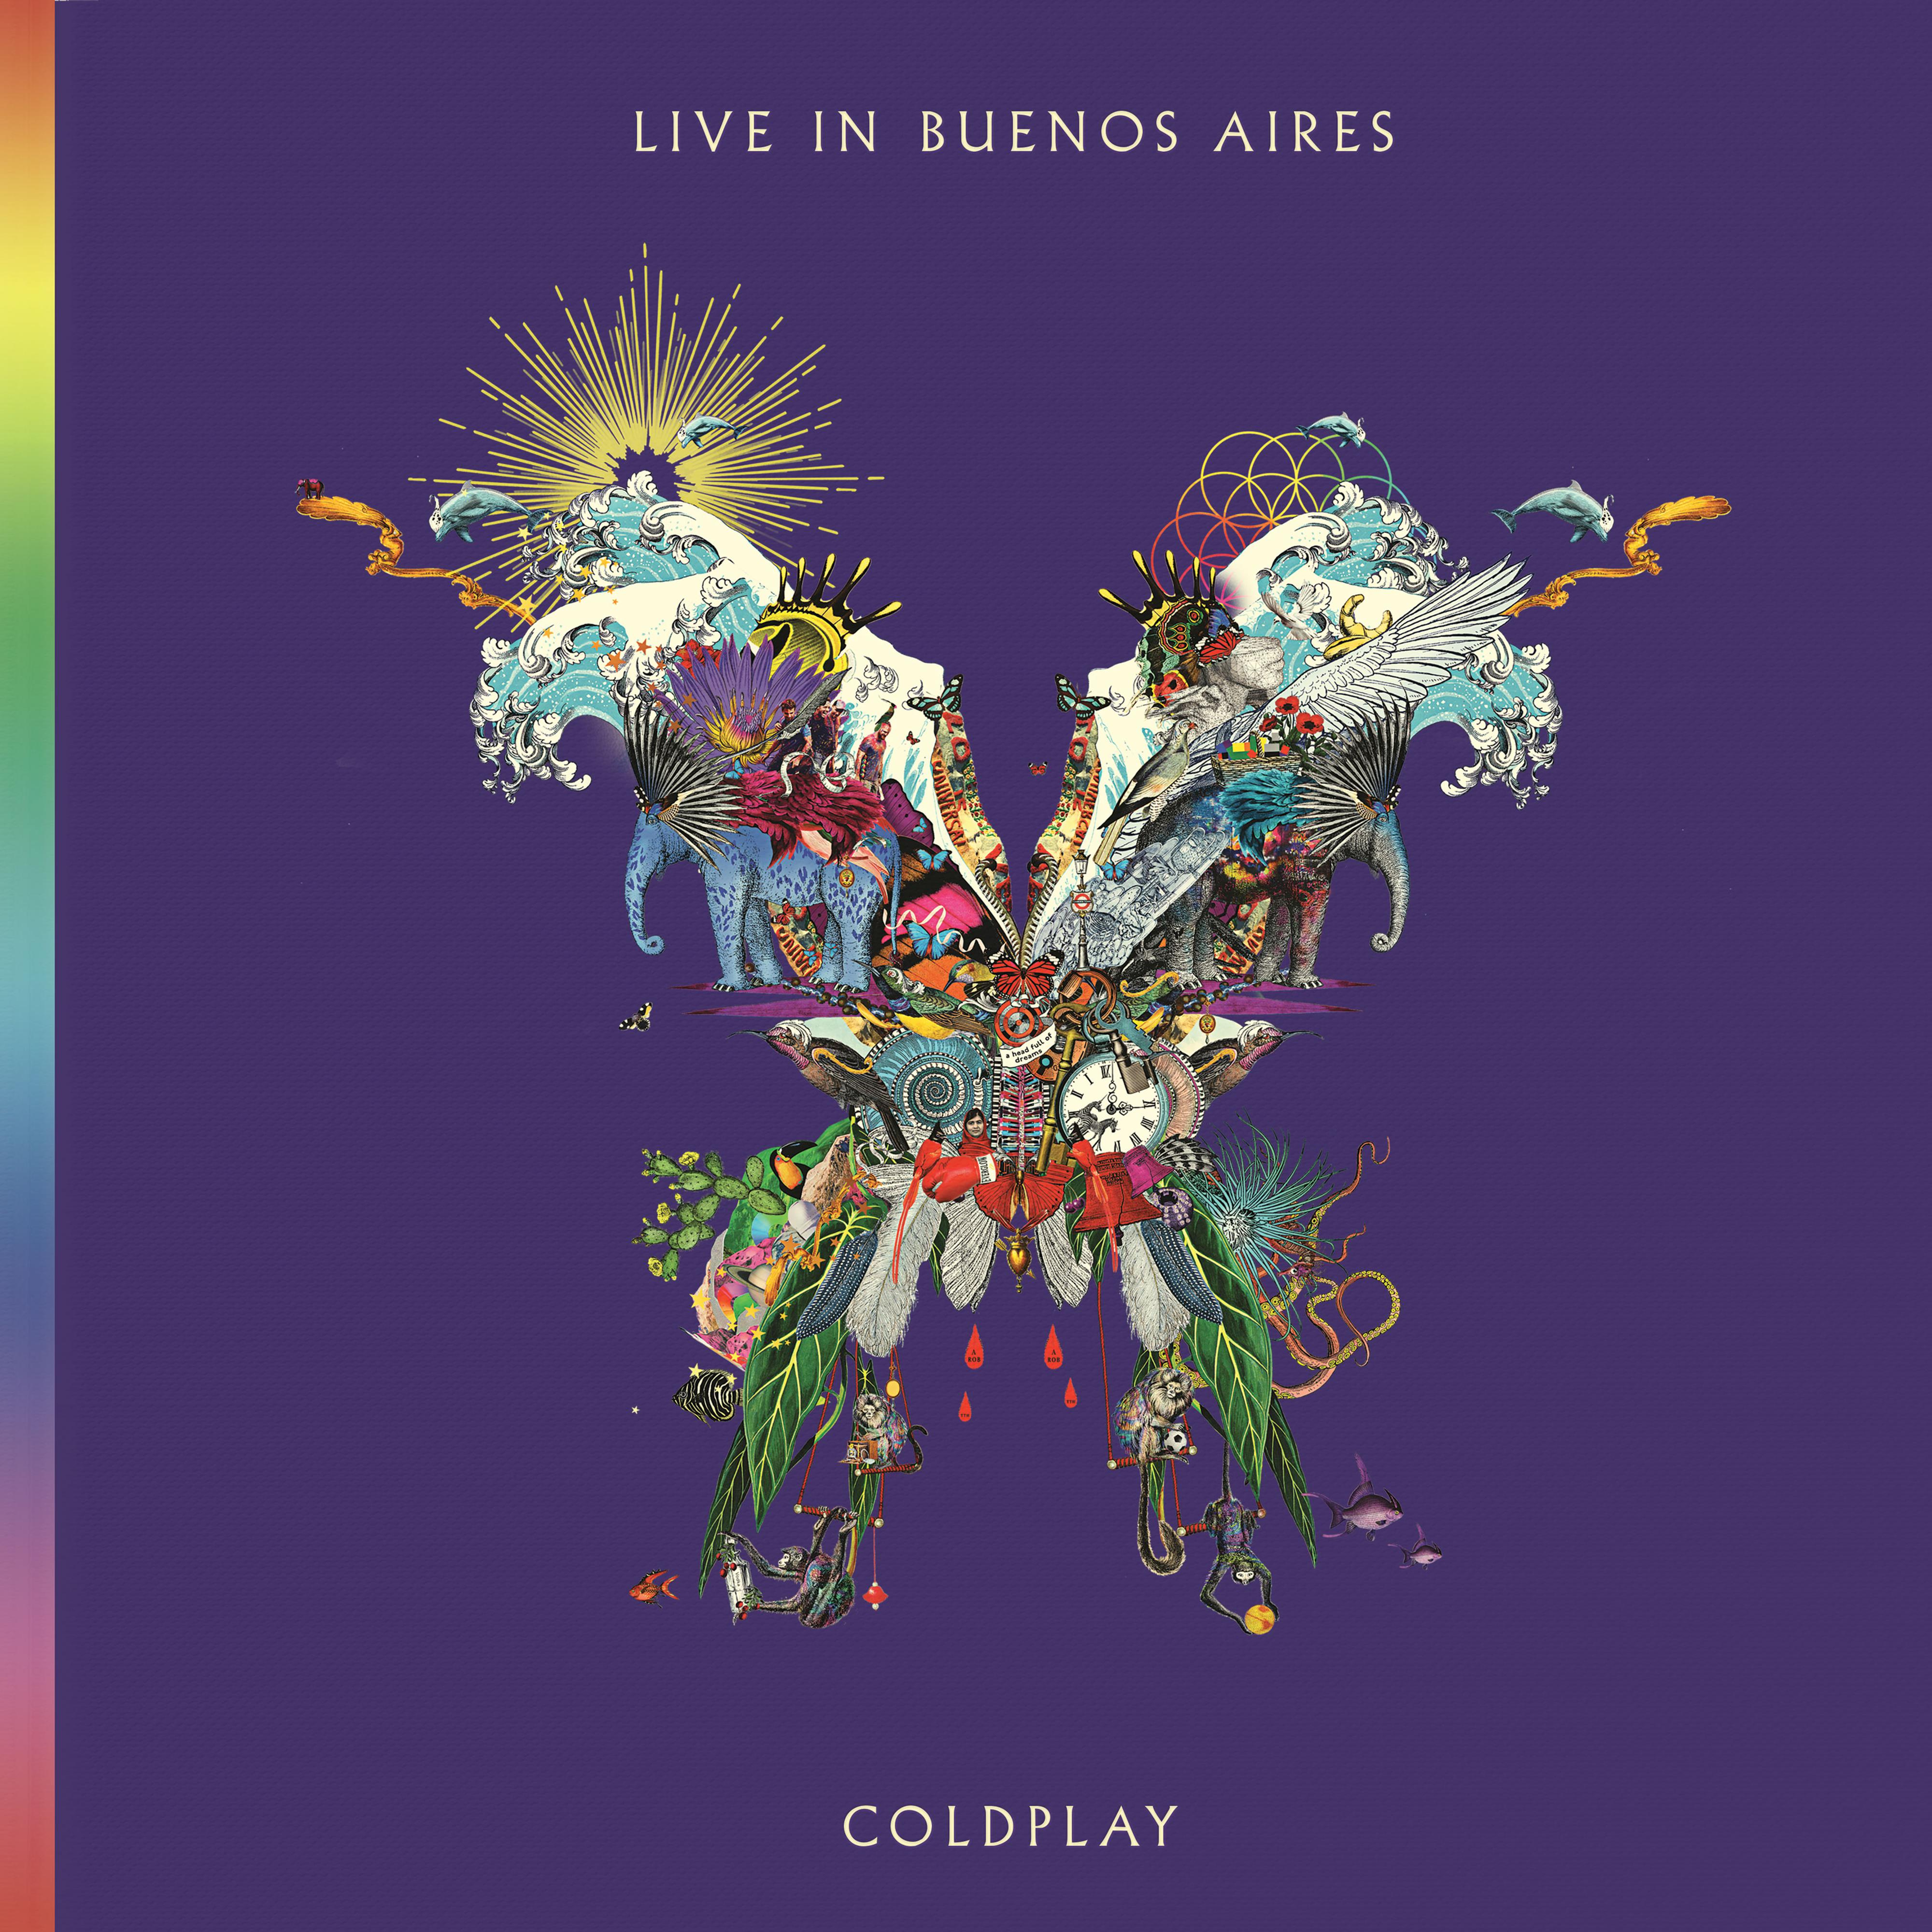 Viva La Vida (Live in Buenos Aires)歌词 歌手Coldplay-专辑Live in Buenos Aires-单曲《Viva La Vida (Live in Buenos Aires)》LRC歌词下载